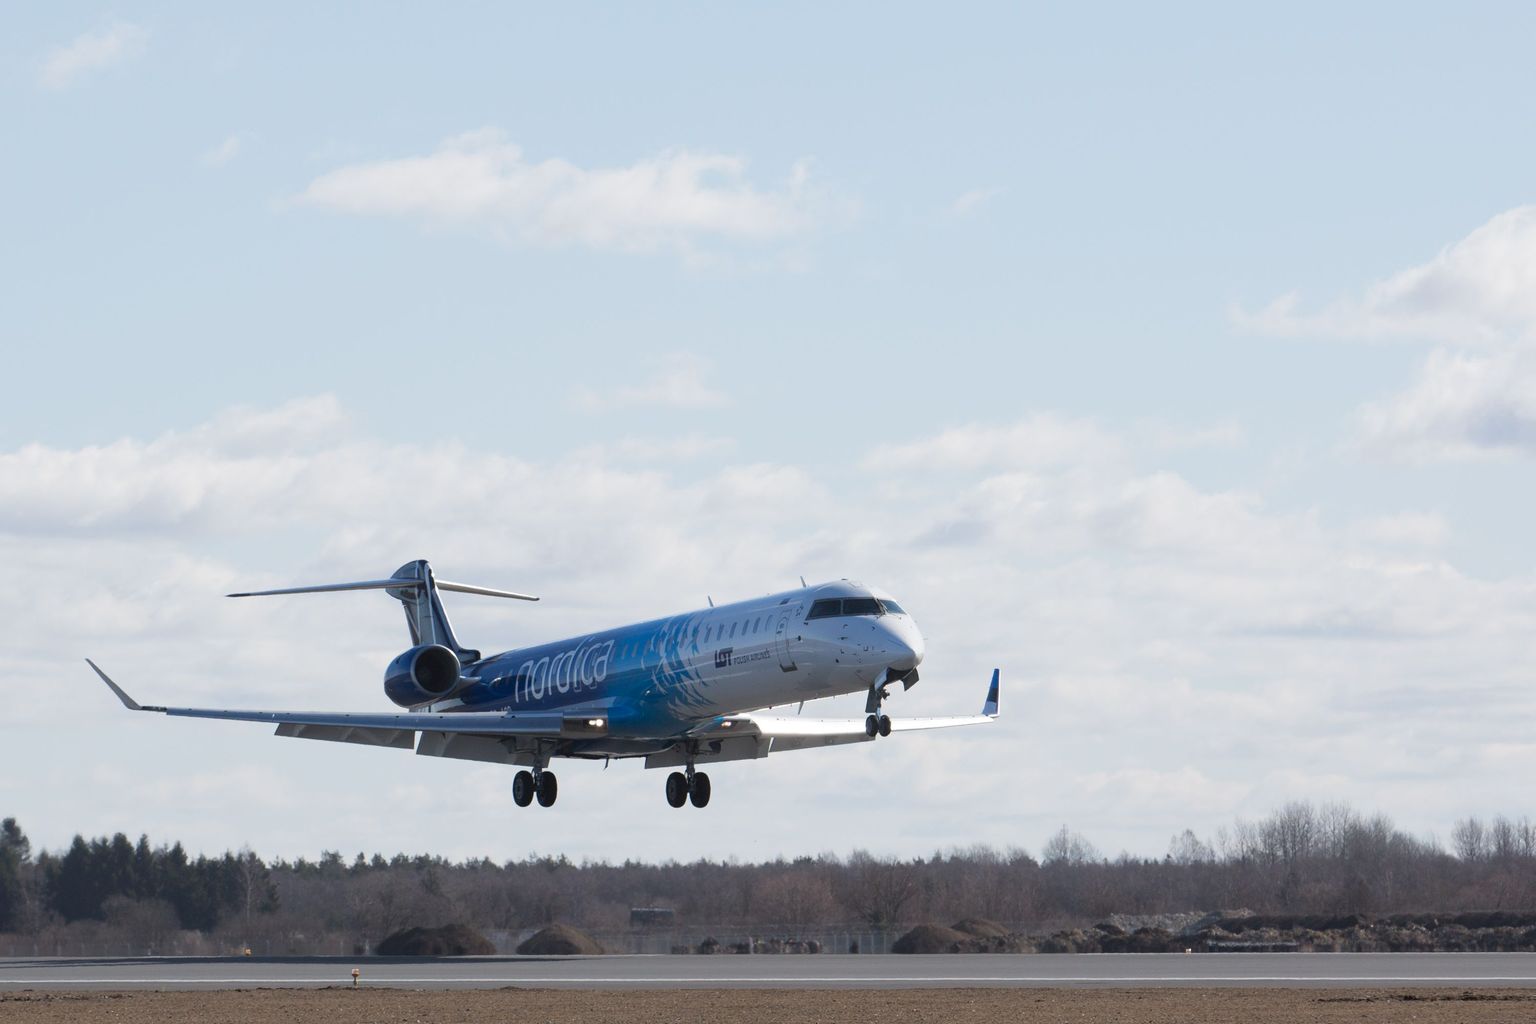 Nordica lennuk maandumas Tallinna lennujaamas.